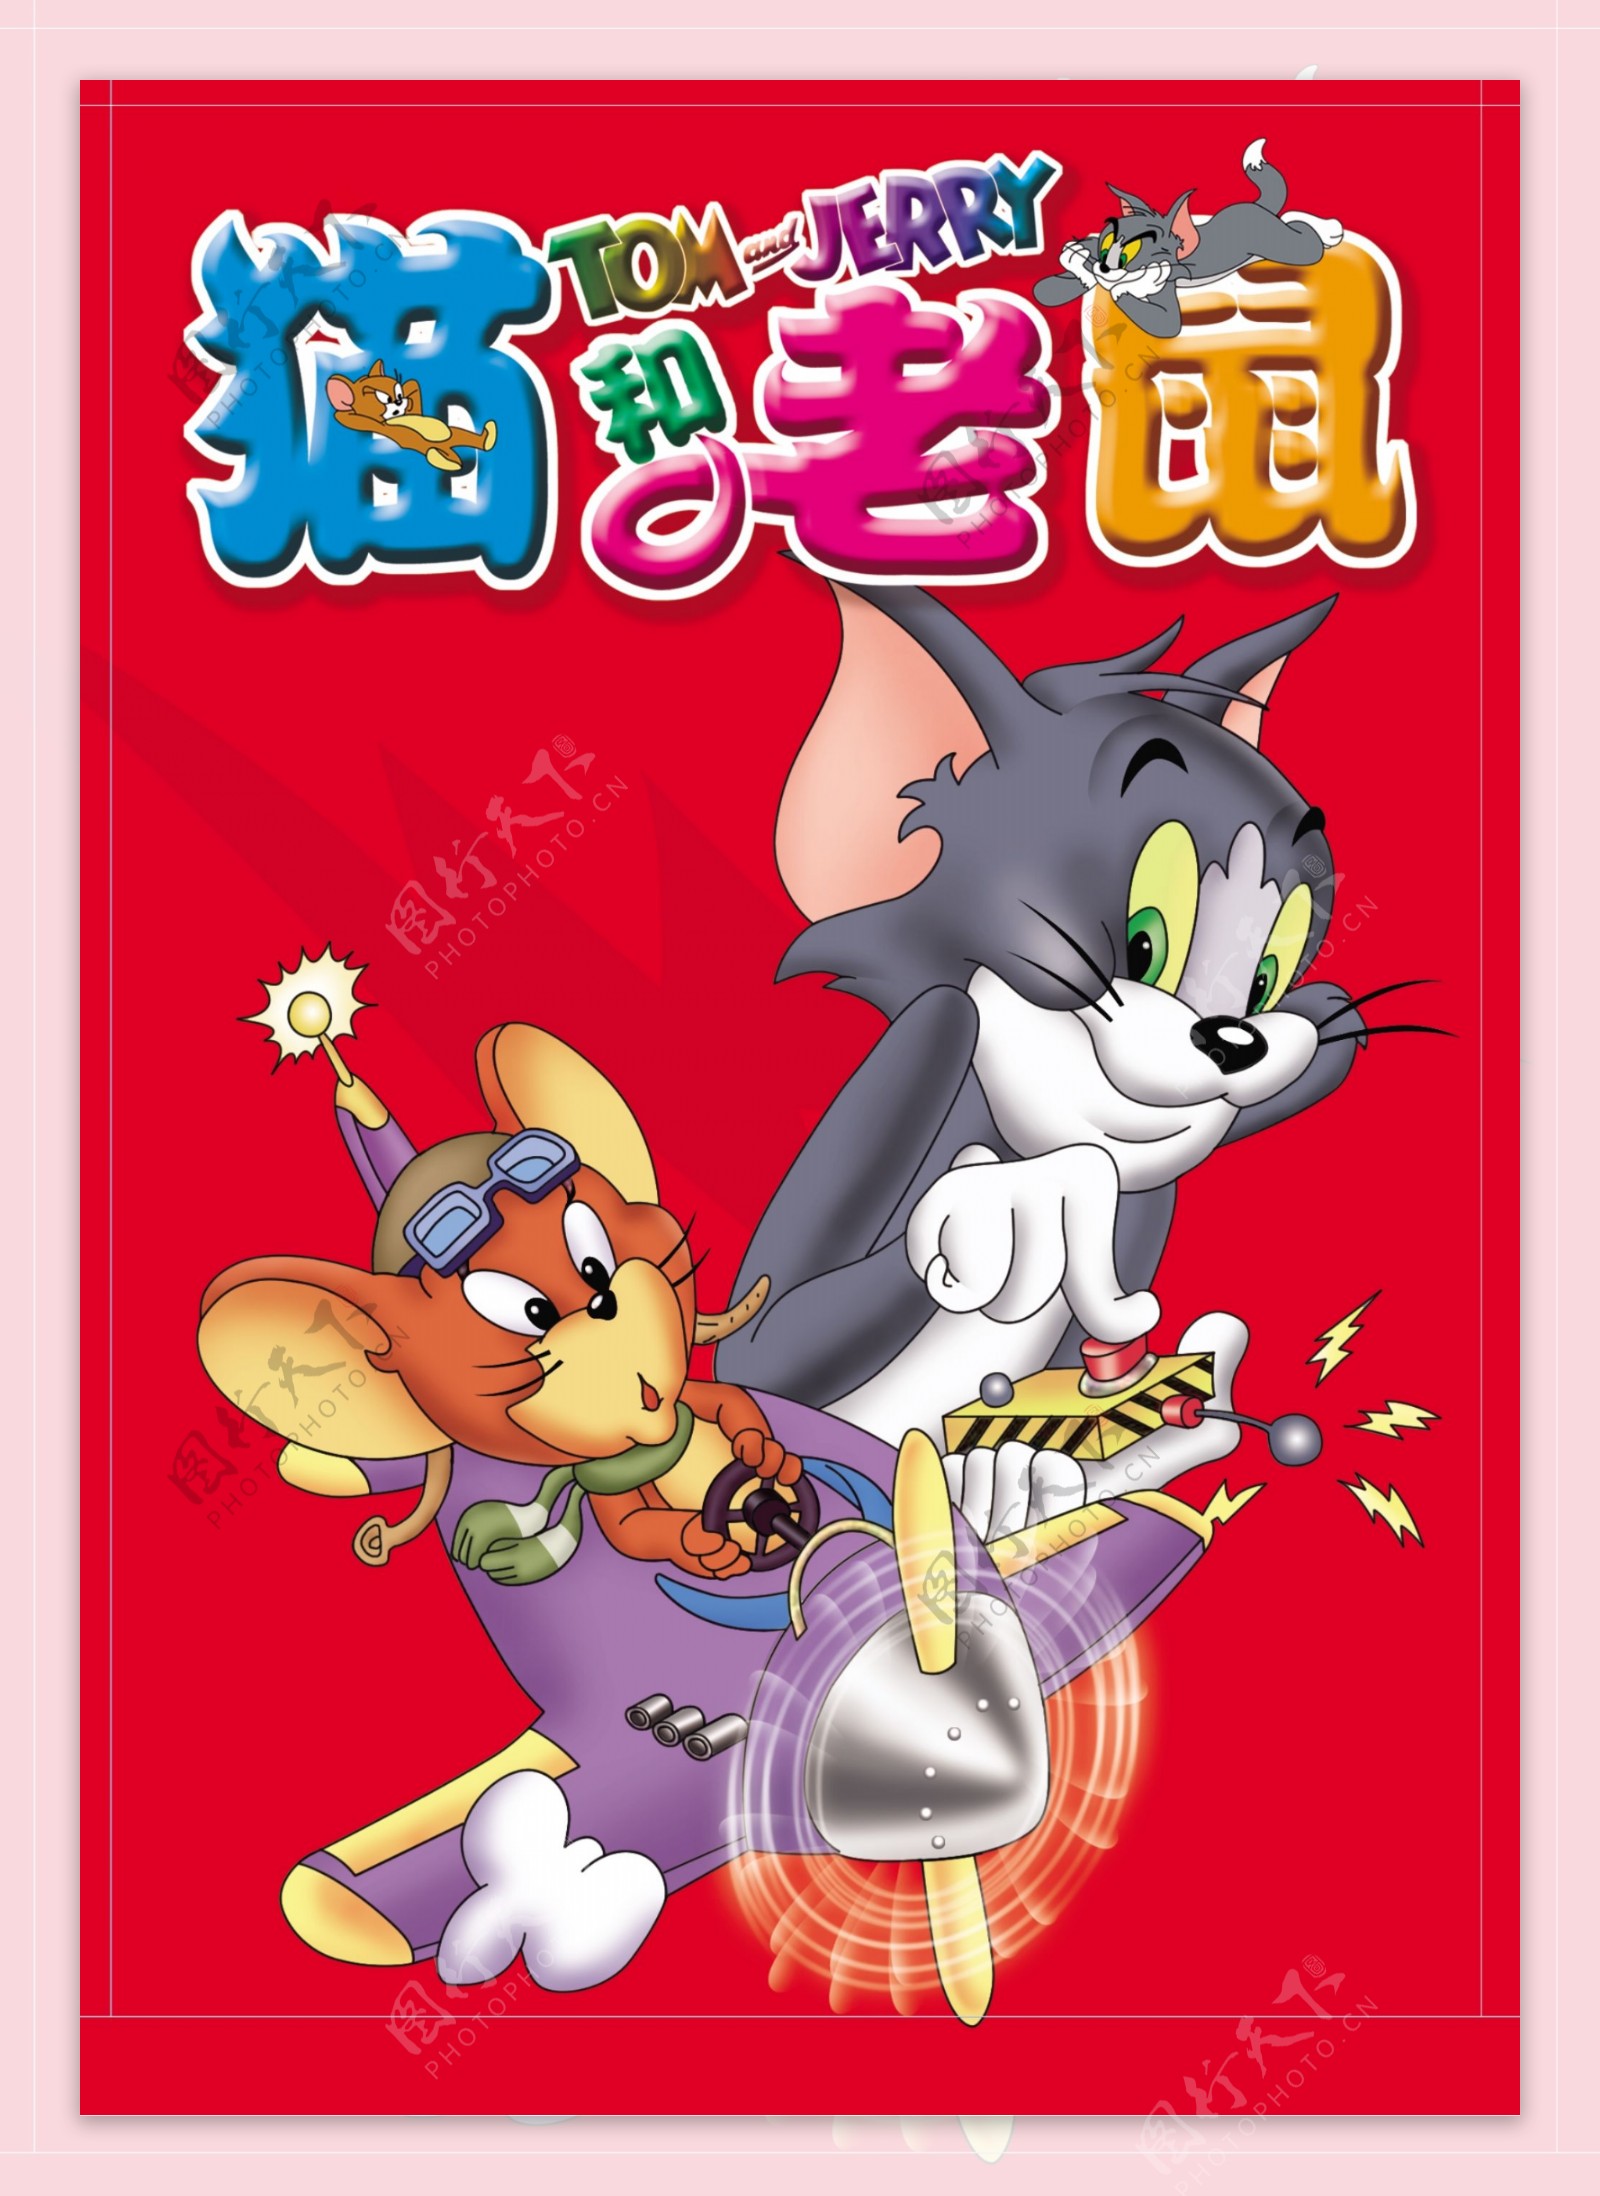 猫和老鼠卡通图片